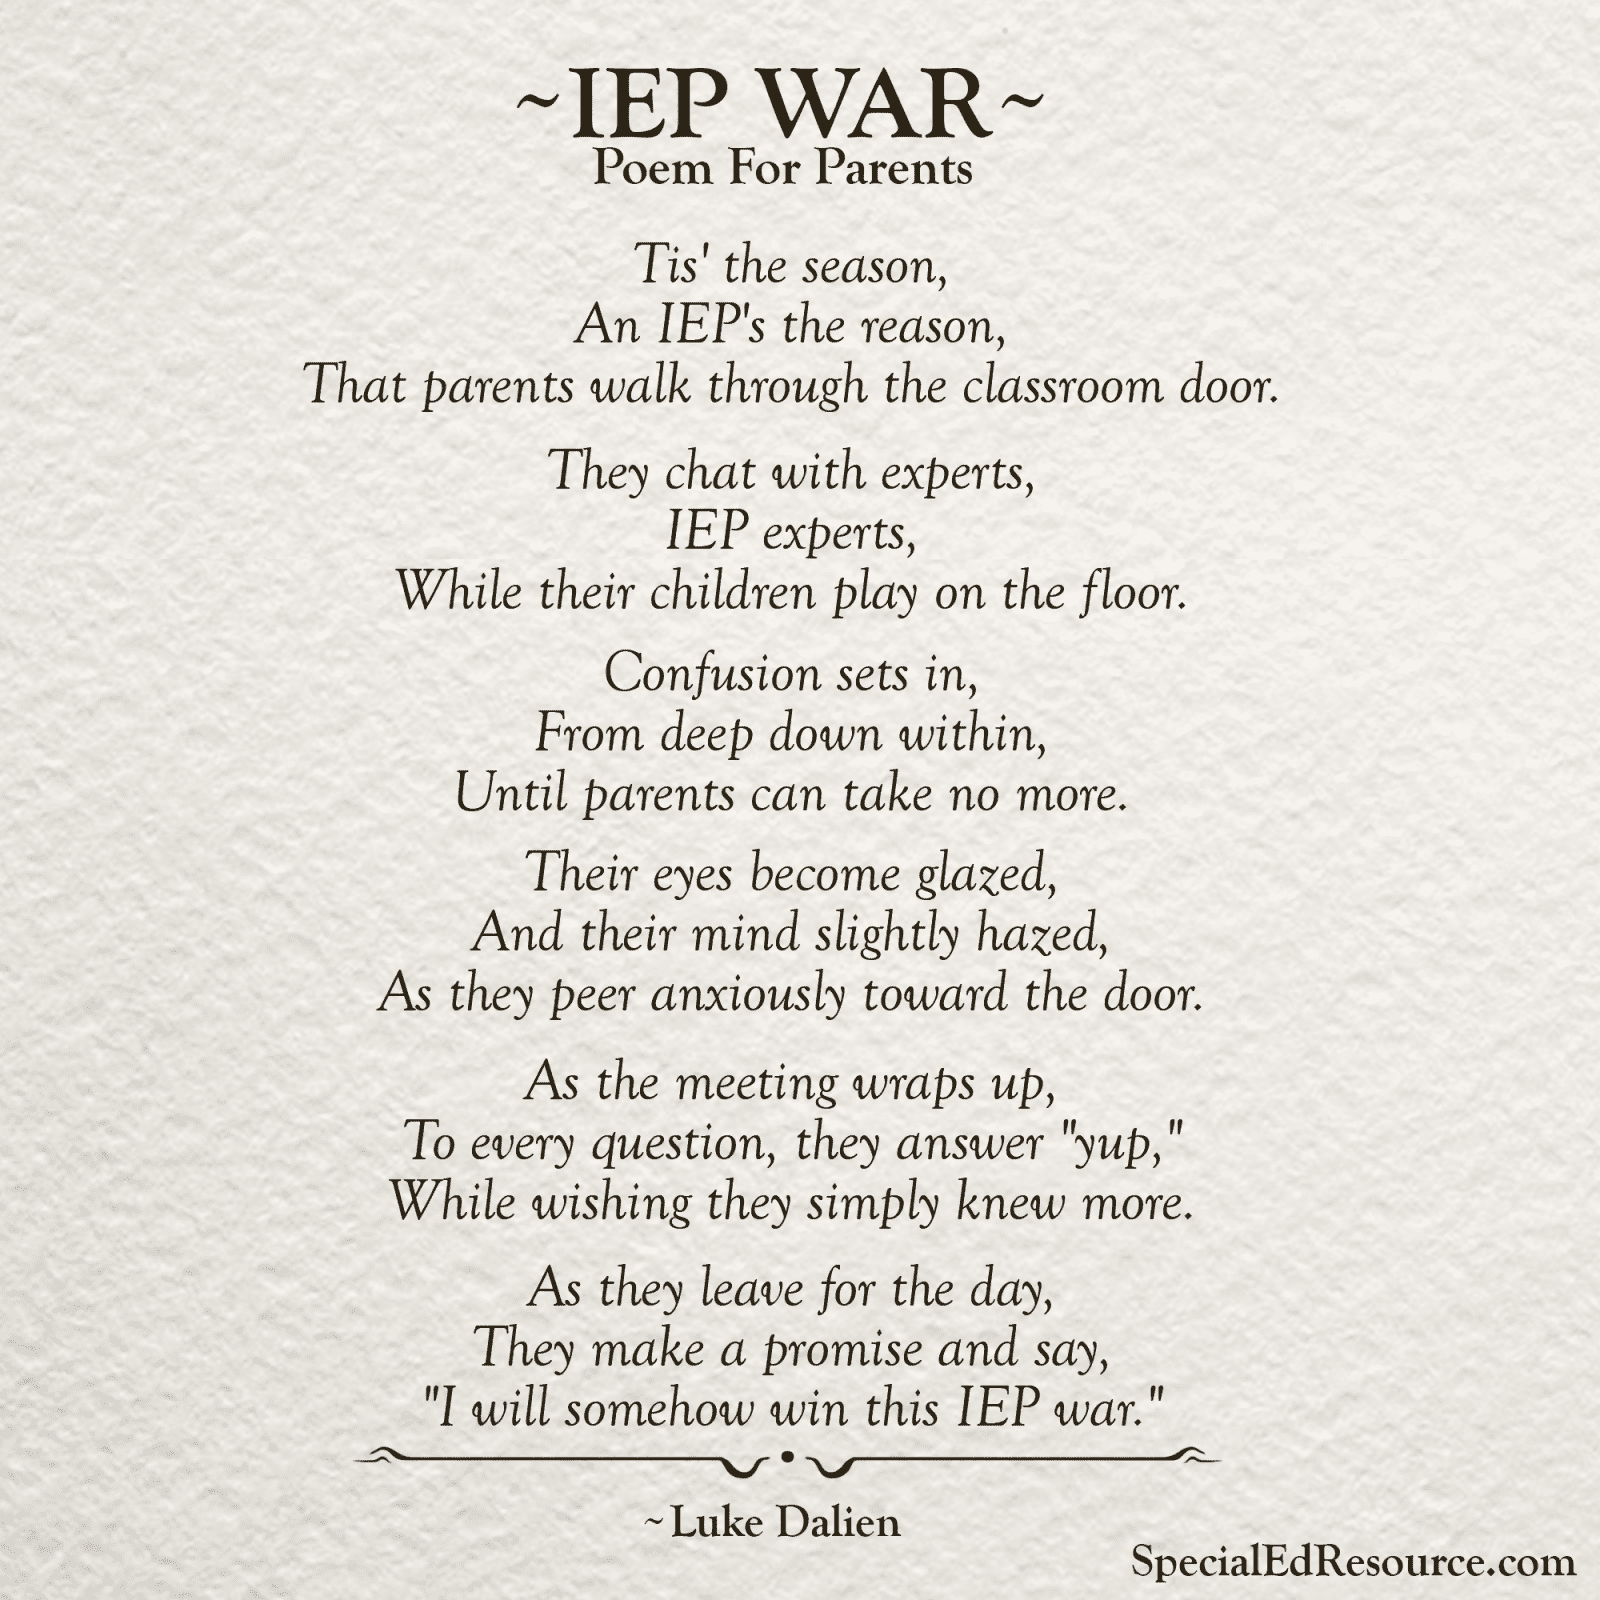 IEP War | A Poem For Parents